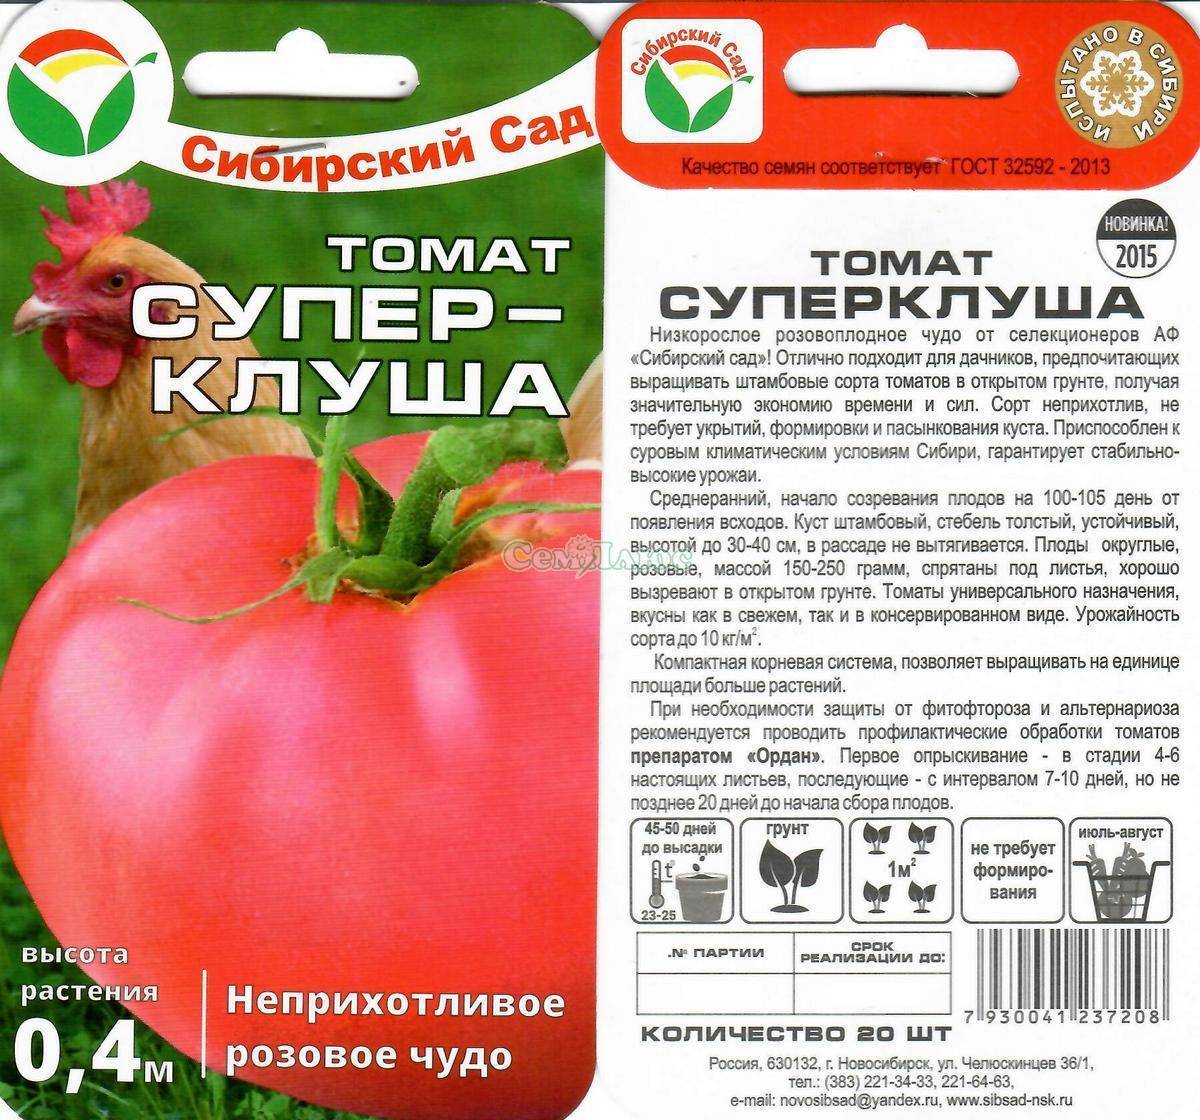 Сорт высокорослых томатов спрут - отзывы и личный опыт выращивания и ухода